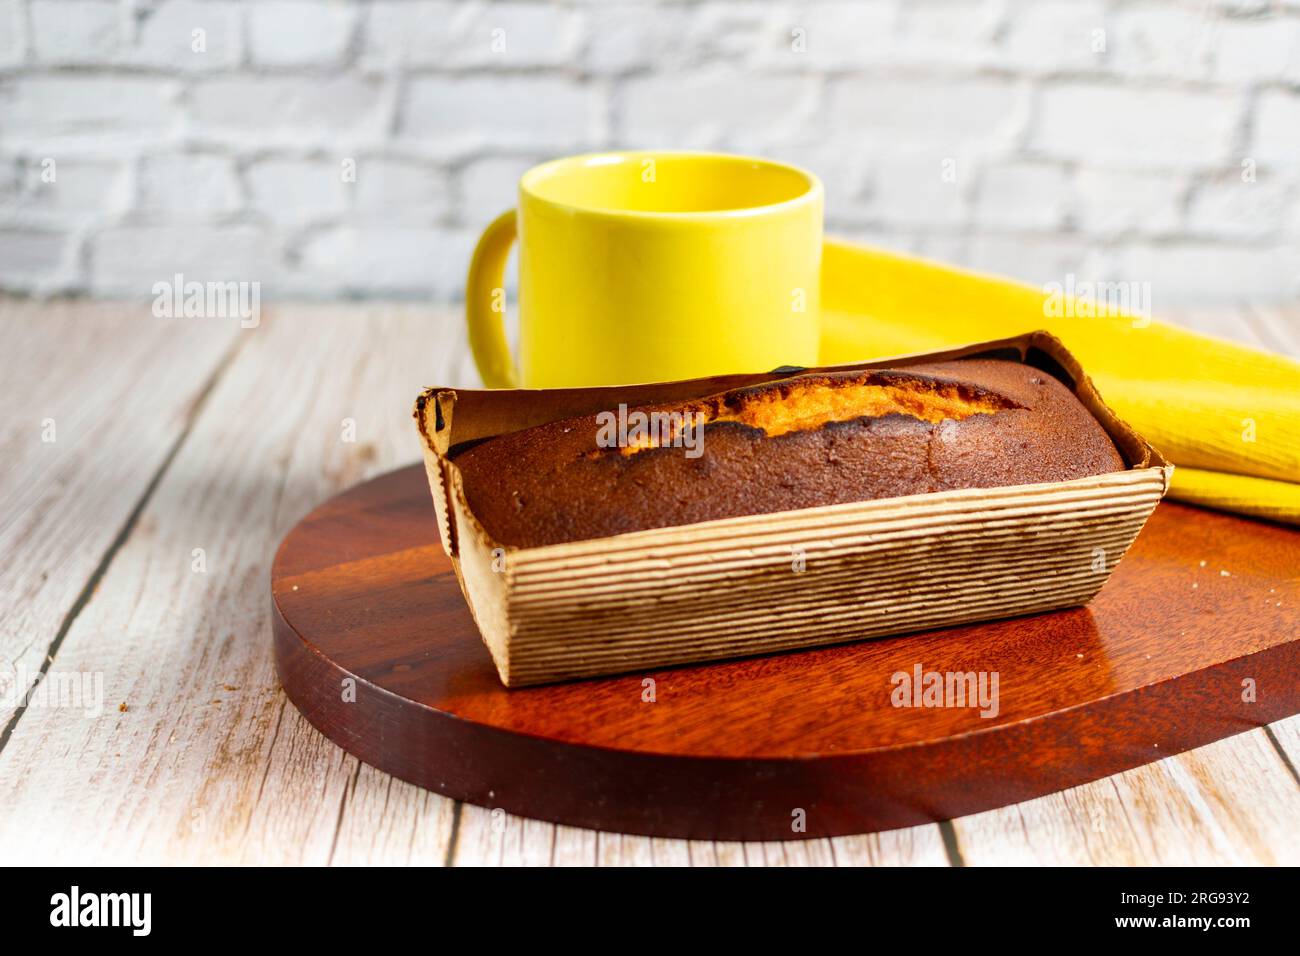 Un gâteau de livre et une tasse de café jaune Banque D'Images